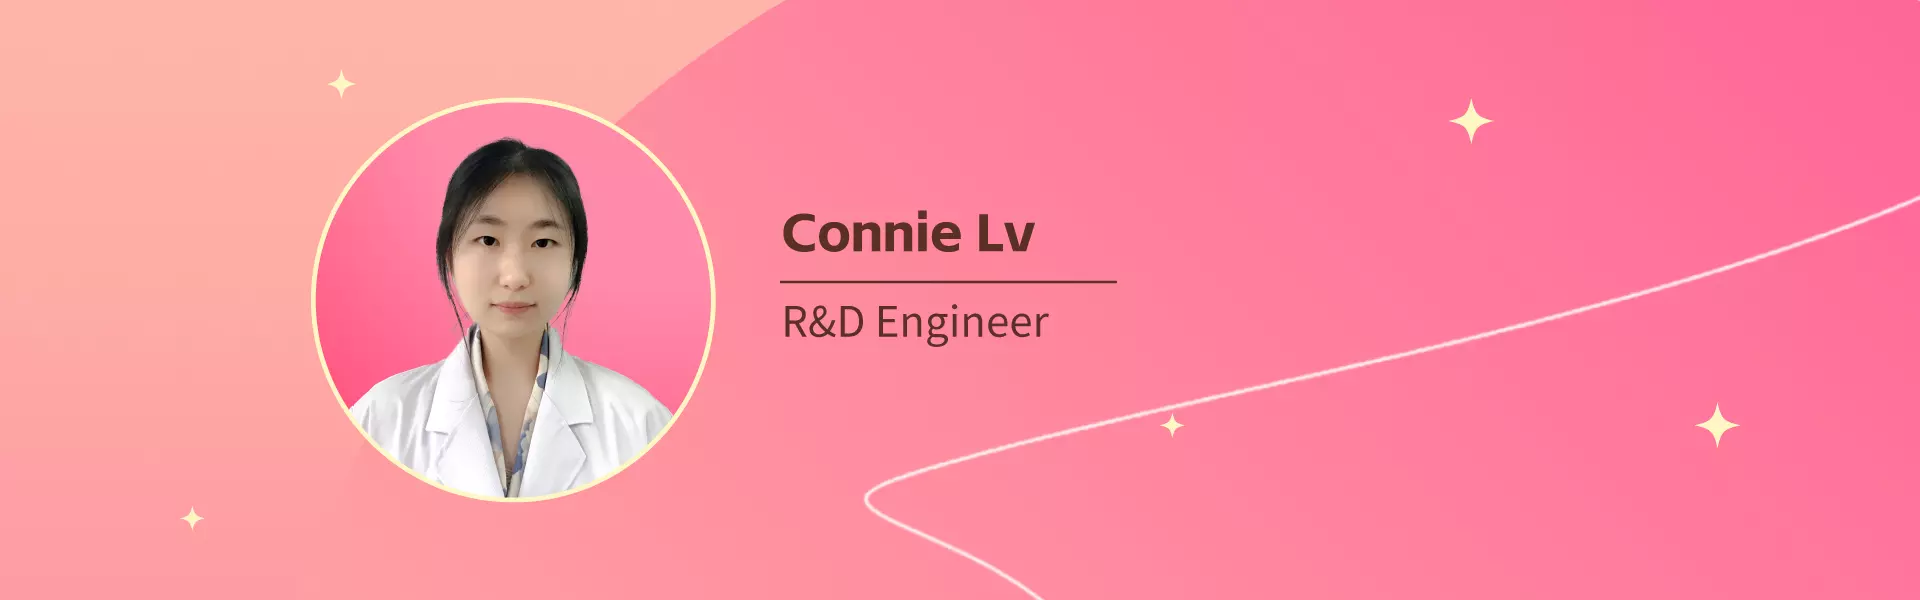 Connie Lv  Zinwi R&D Engineer